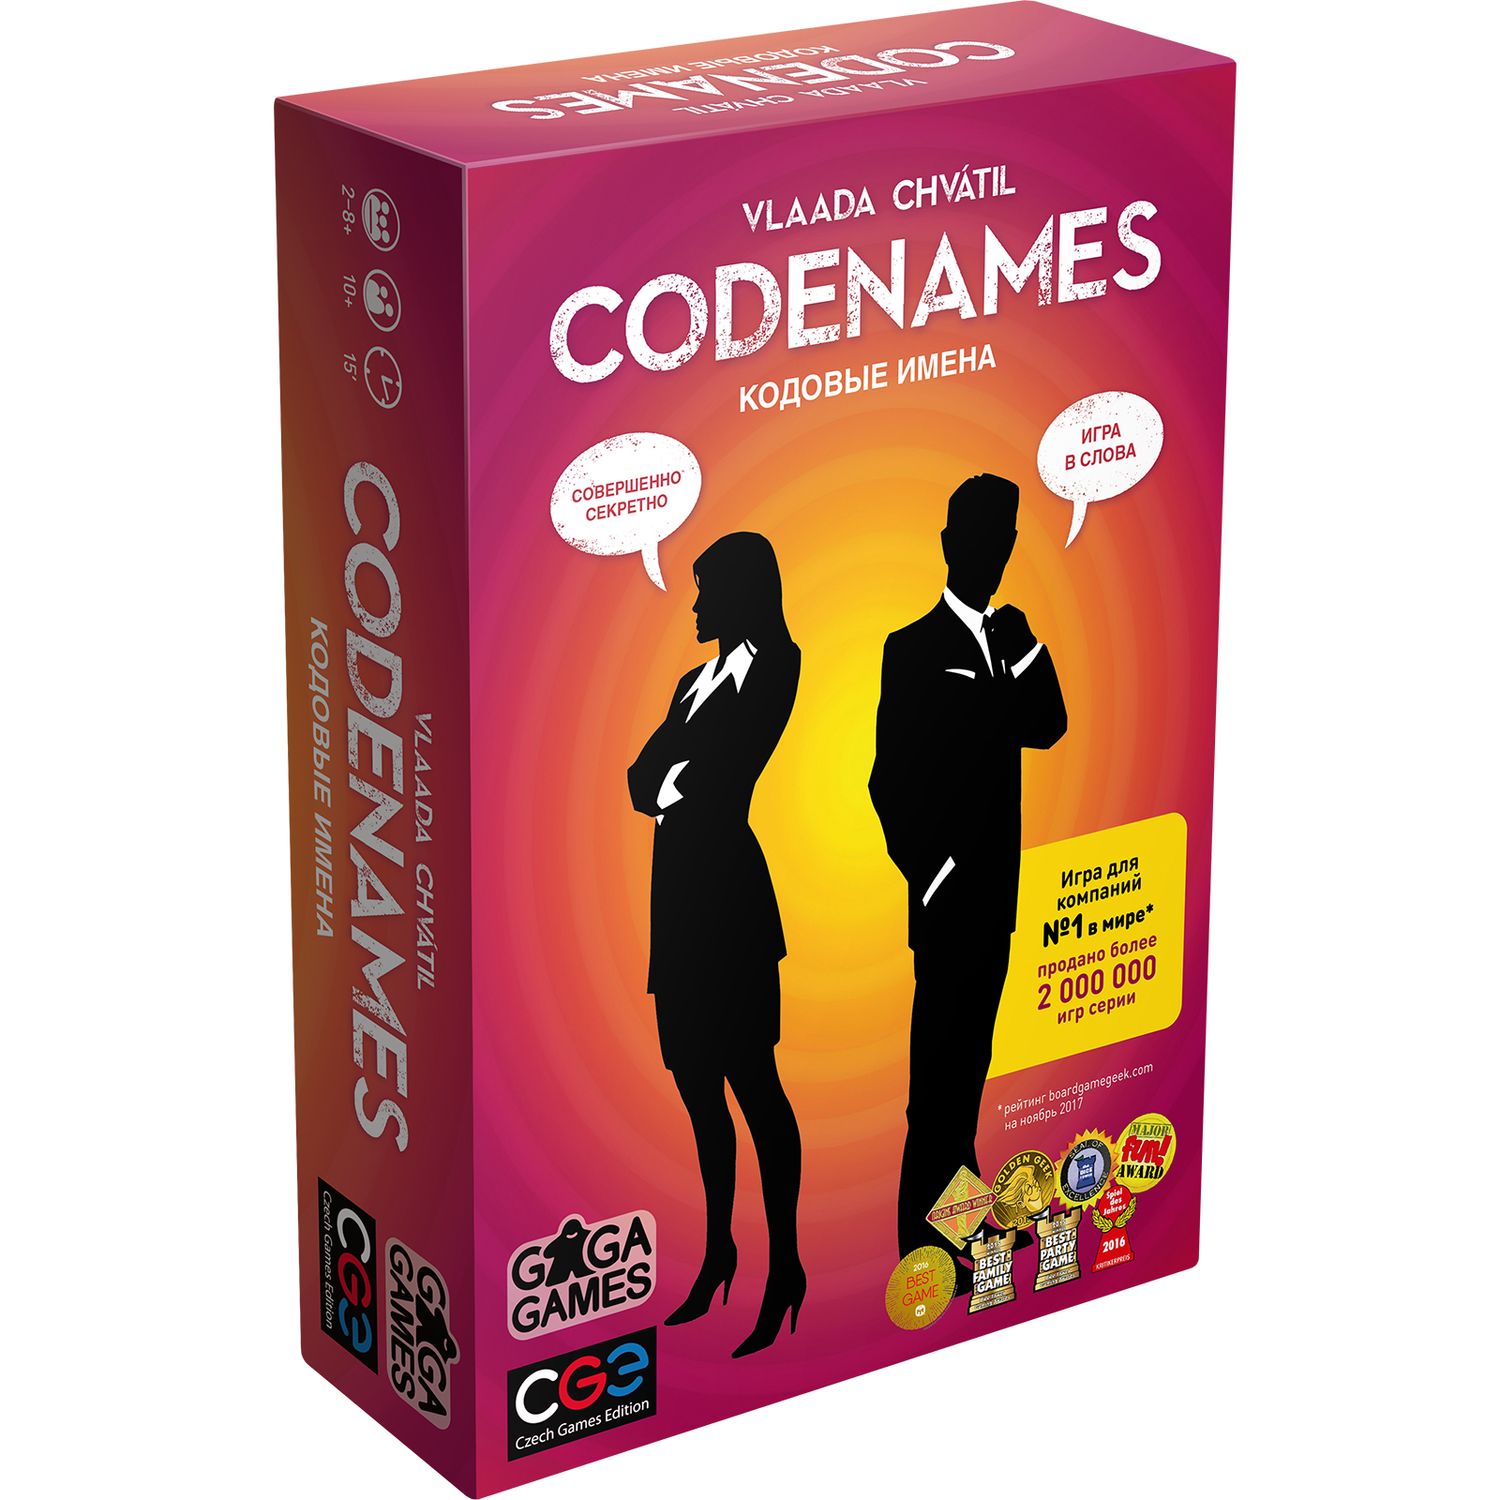 Игра настольная GaGa GAMES Кодовые имена Codenames GG041 - фото 1